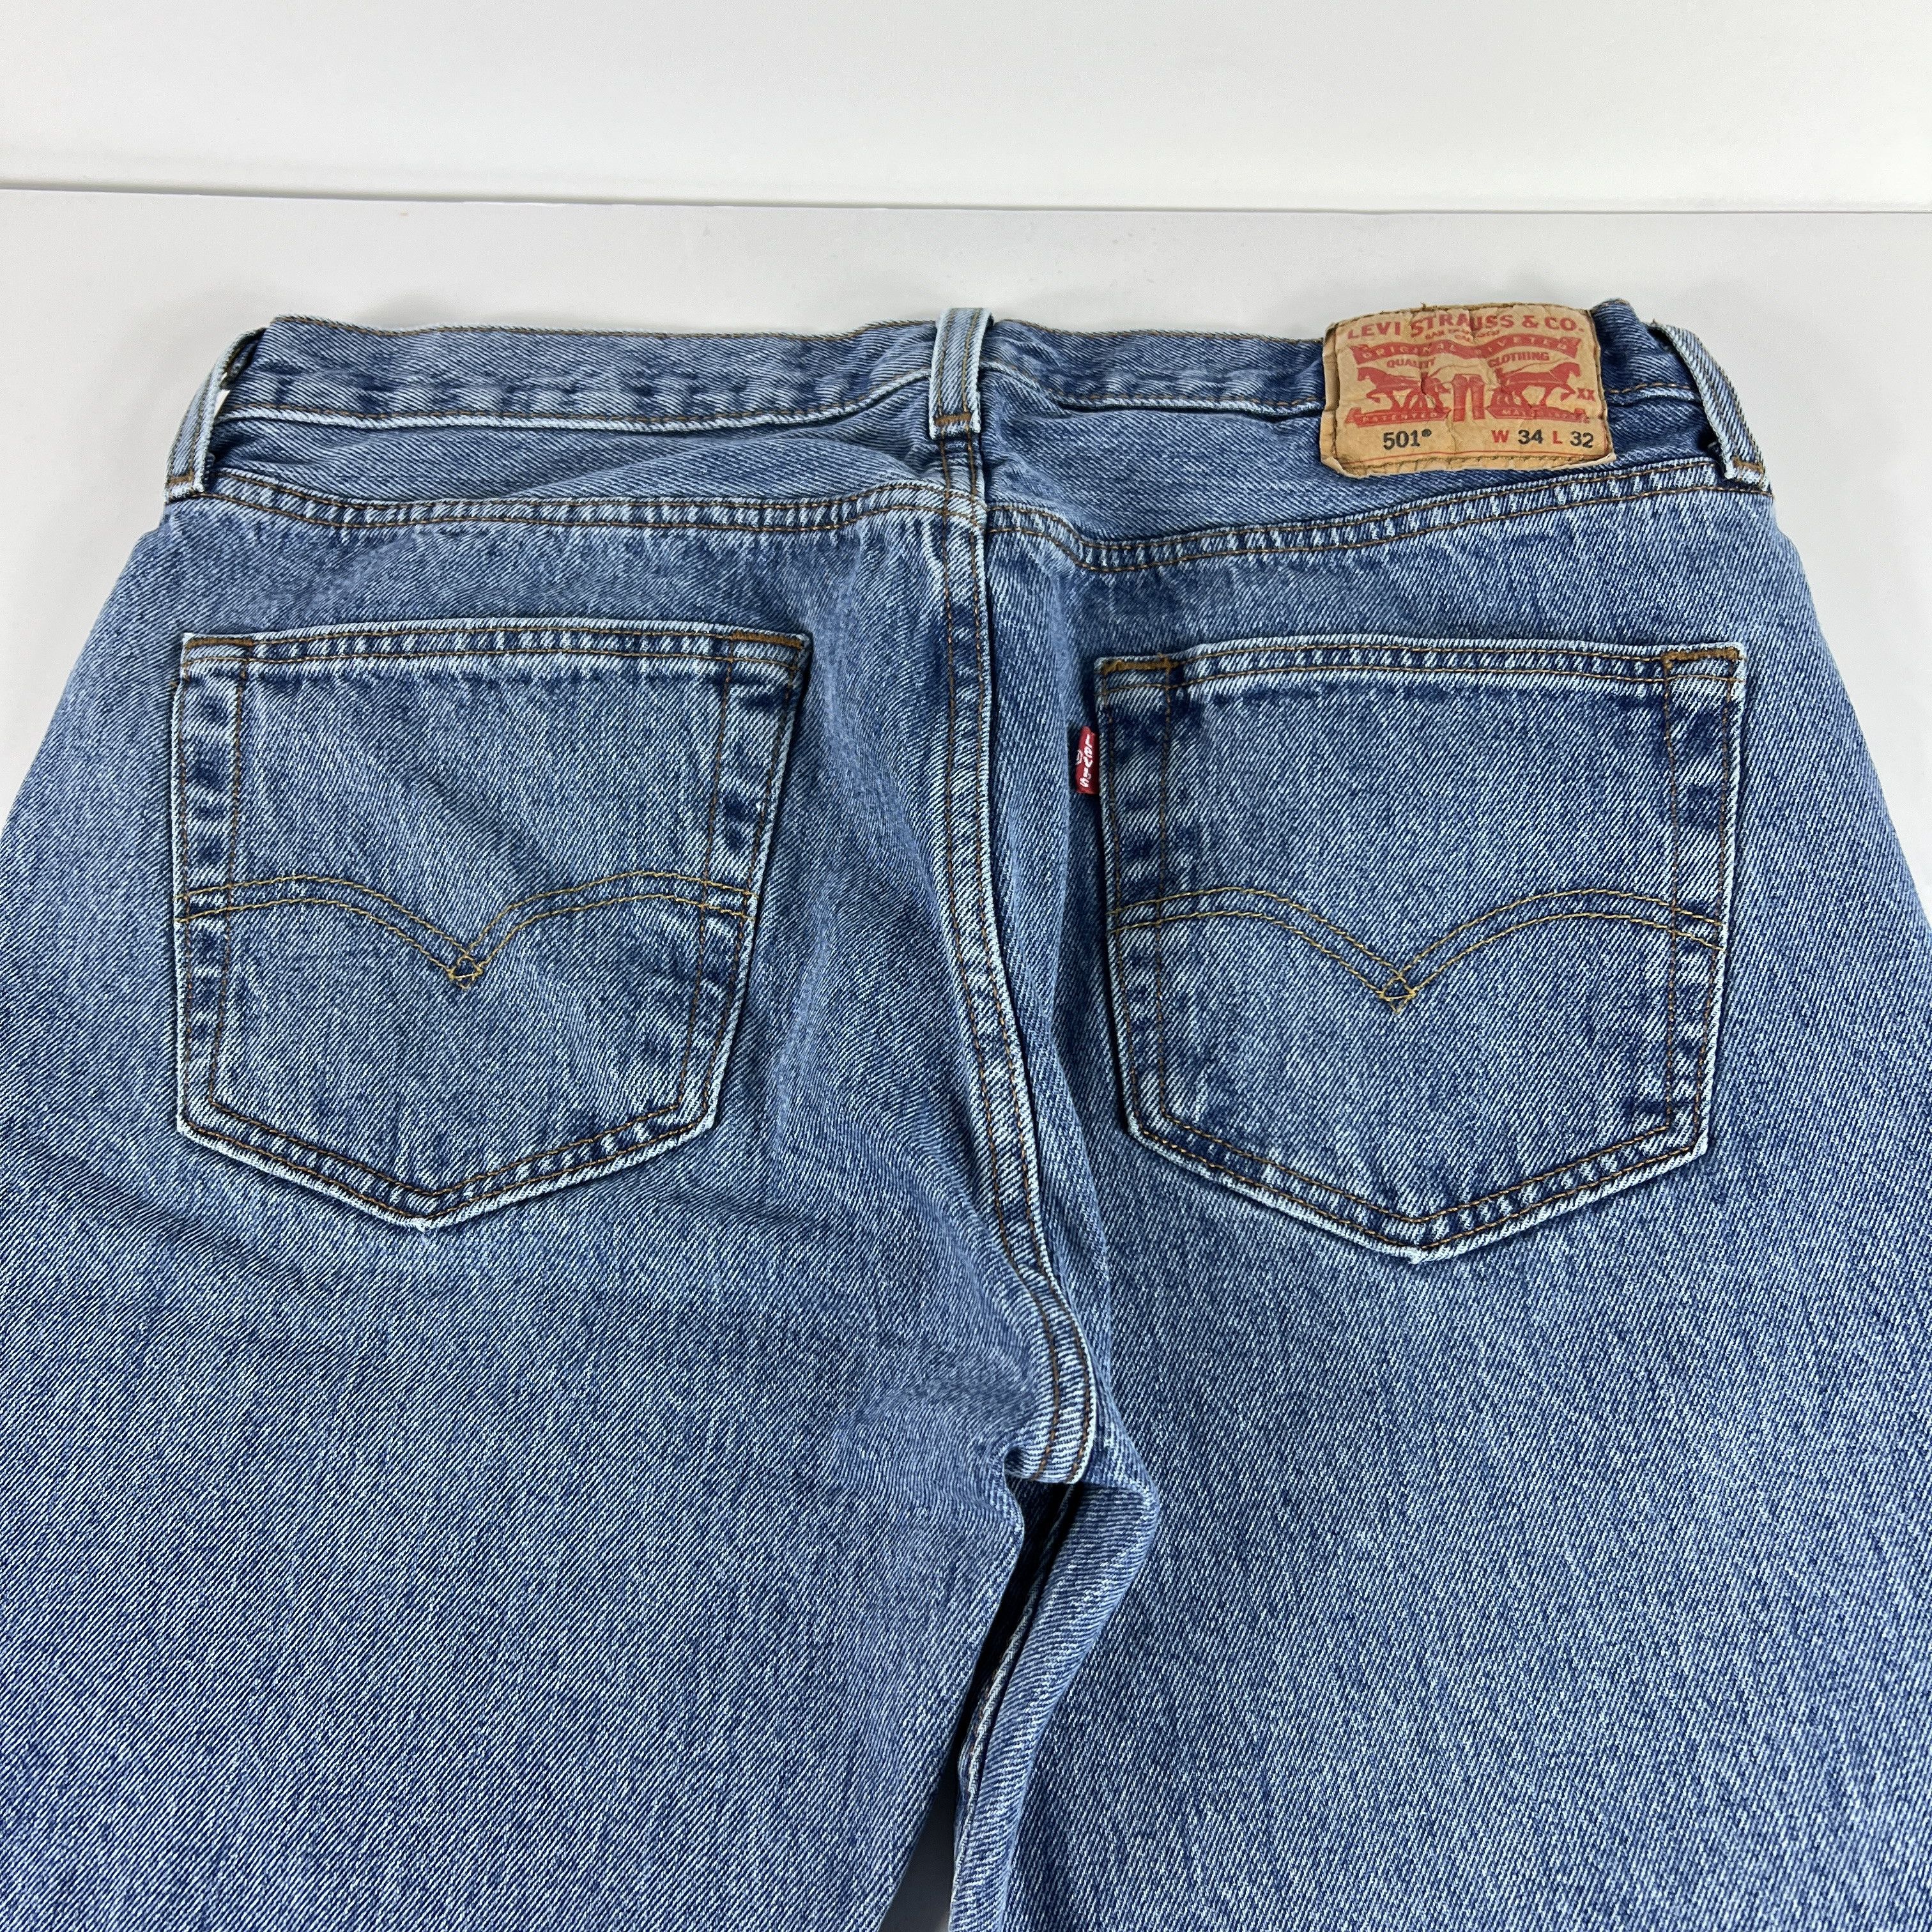 Levi's Levi's Jeans 501 XX Original Straight Blue Cotton Denim Size US 33 - 12 Thumbnail